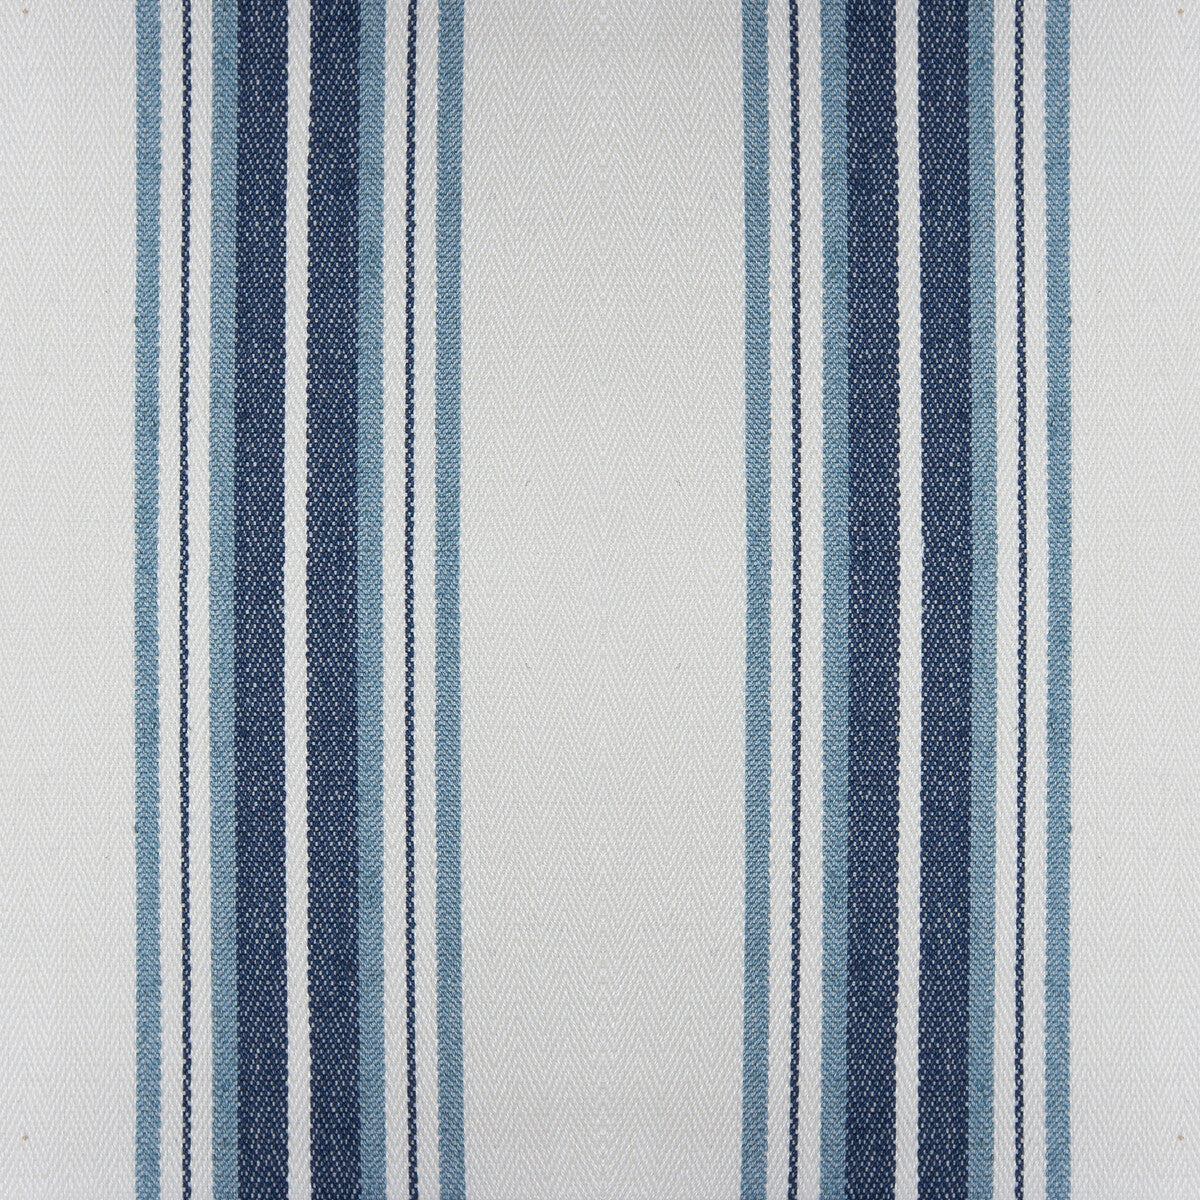 Nueva York fabric in azul color - pattern GDT5573.002.0 - by Gaston y Daniela in the Gaston Luis Bustamante collection